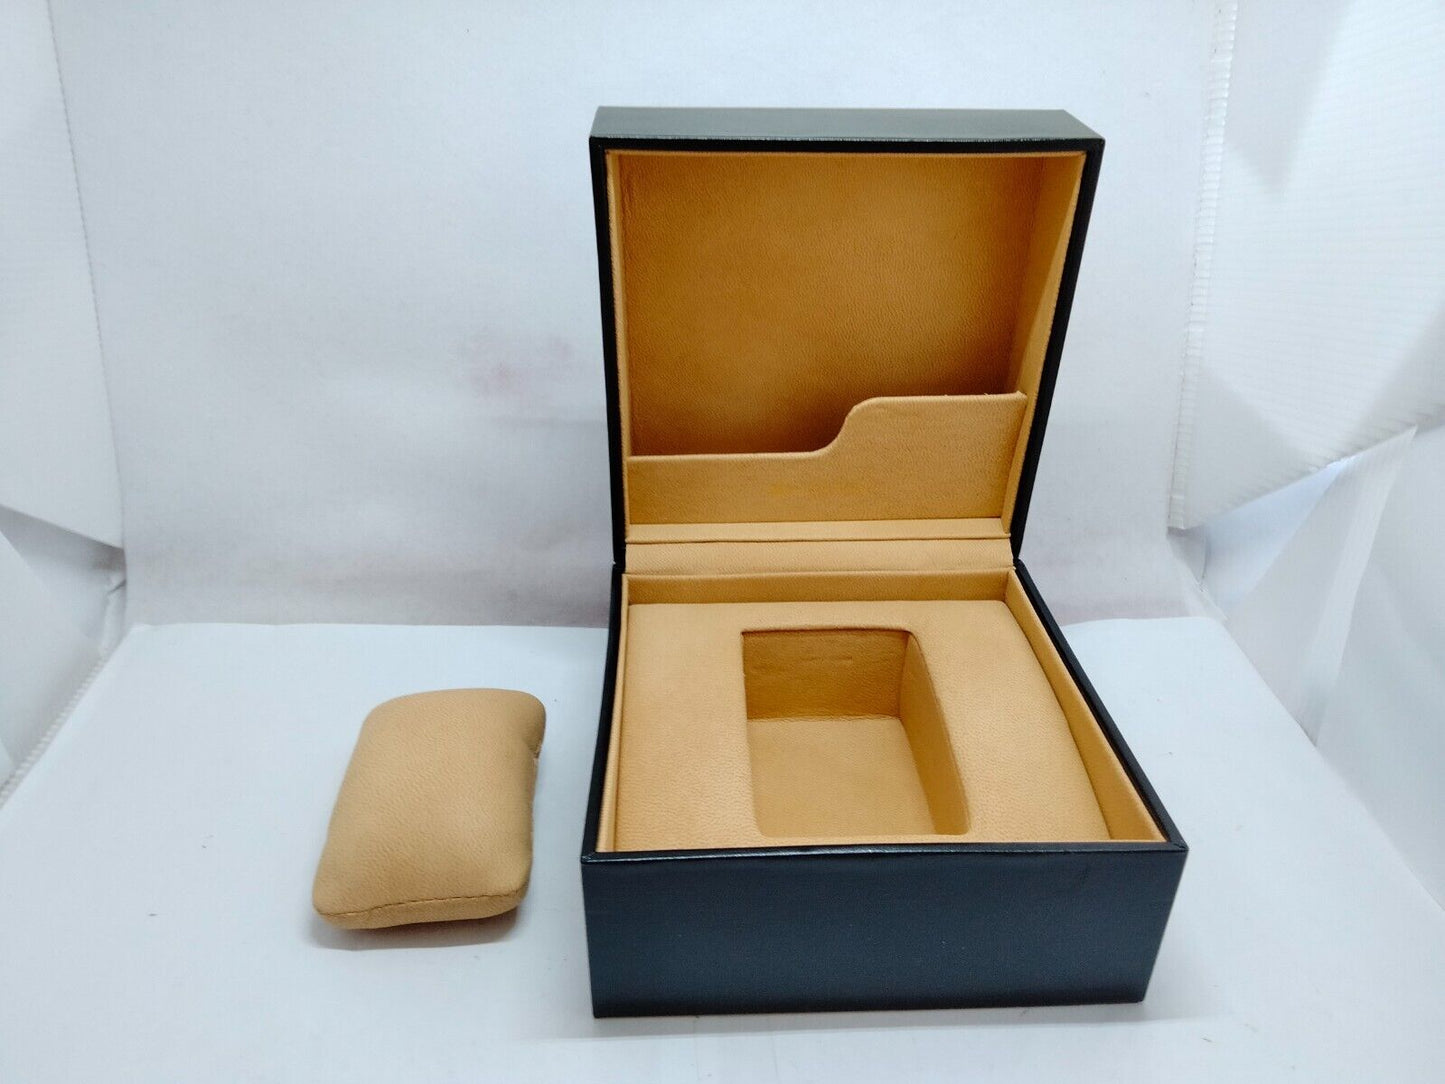 VINTAGE GENUINE BVLGARI watch box case Black wood leather 230612002yS